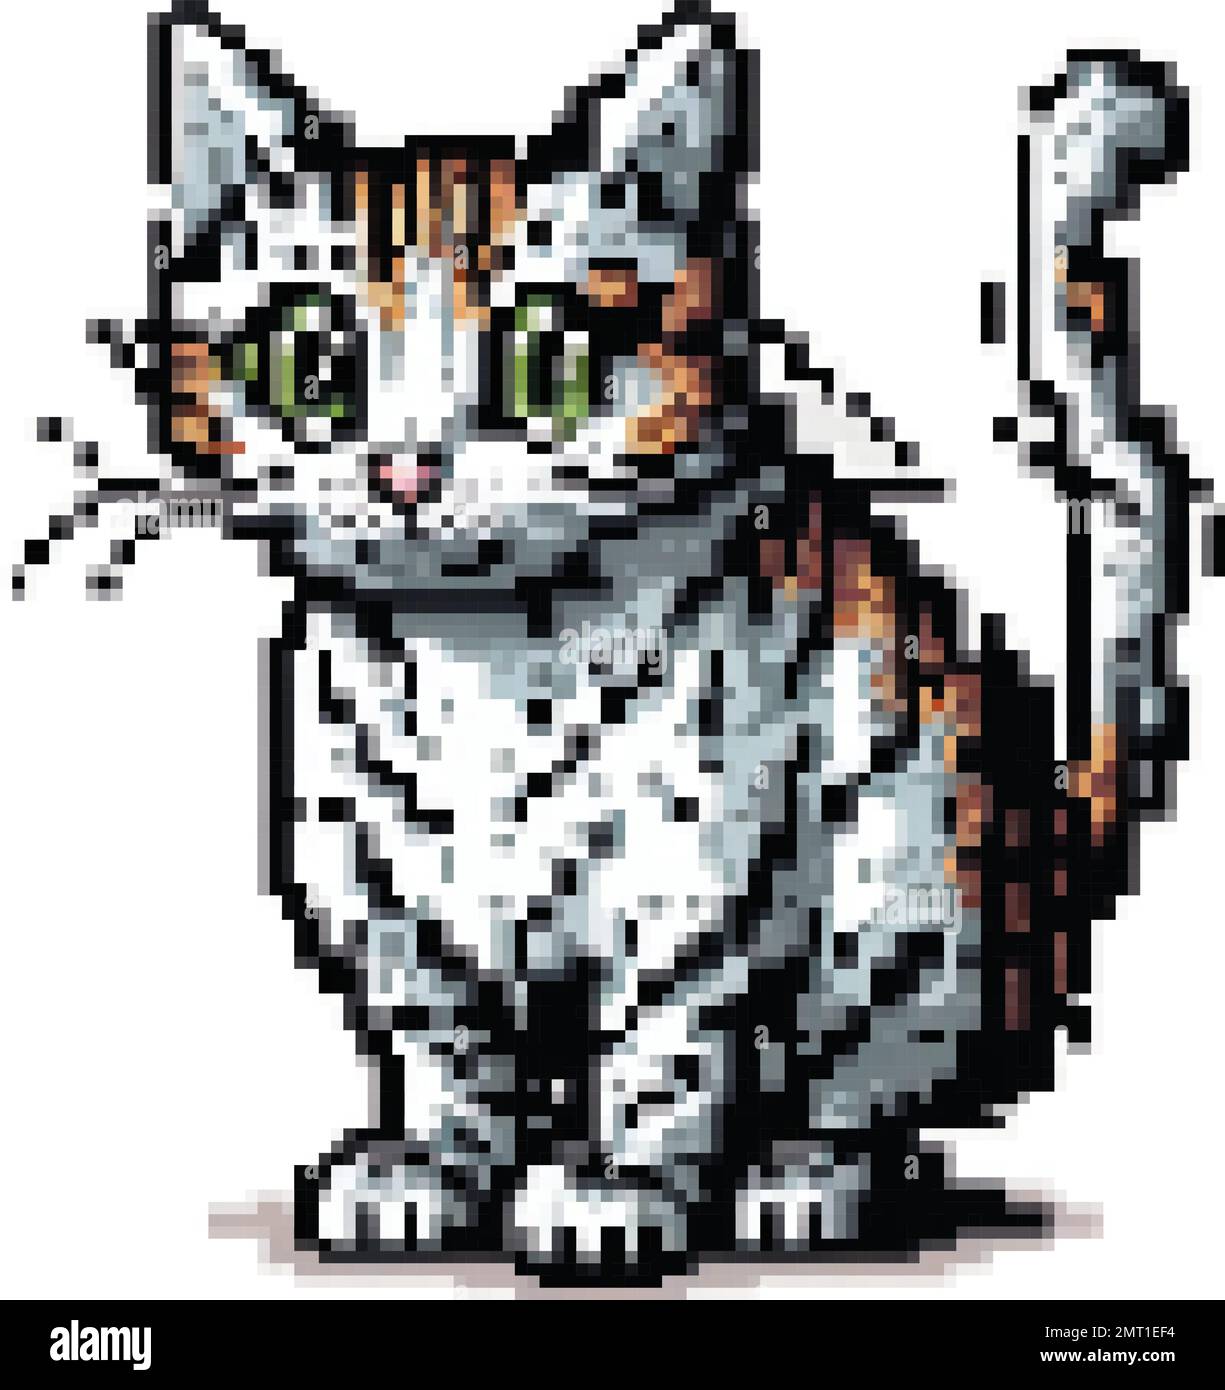 Cat pixel art Stock Vector Images - Alamy